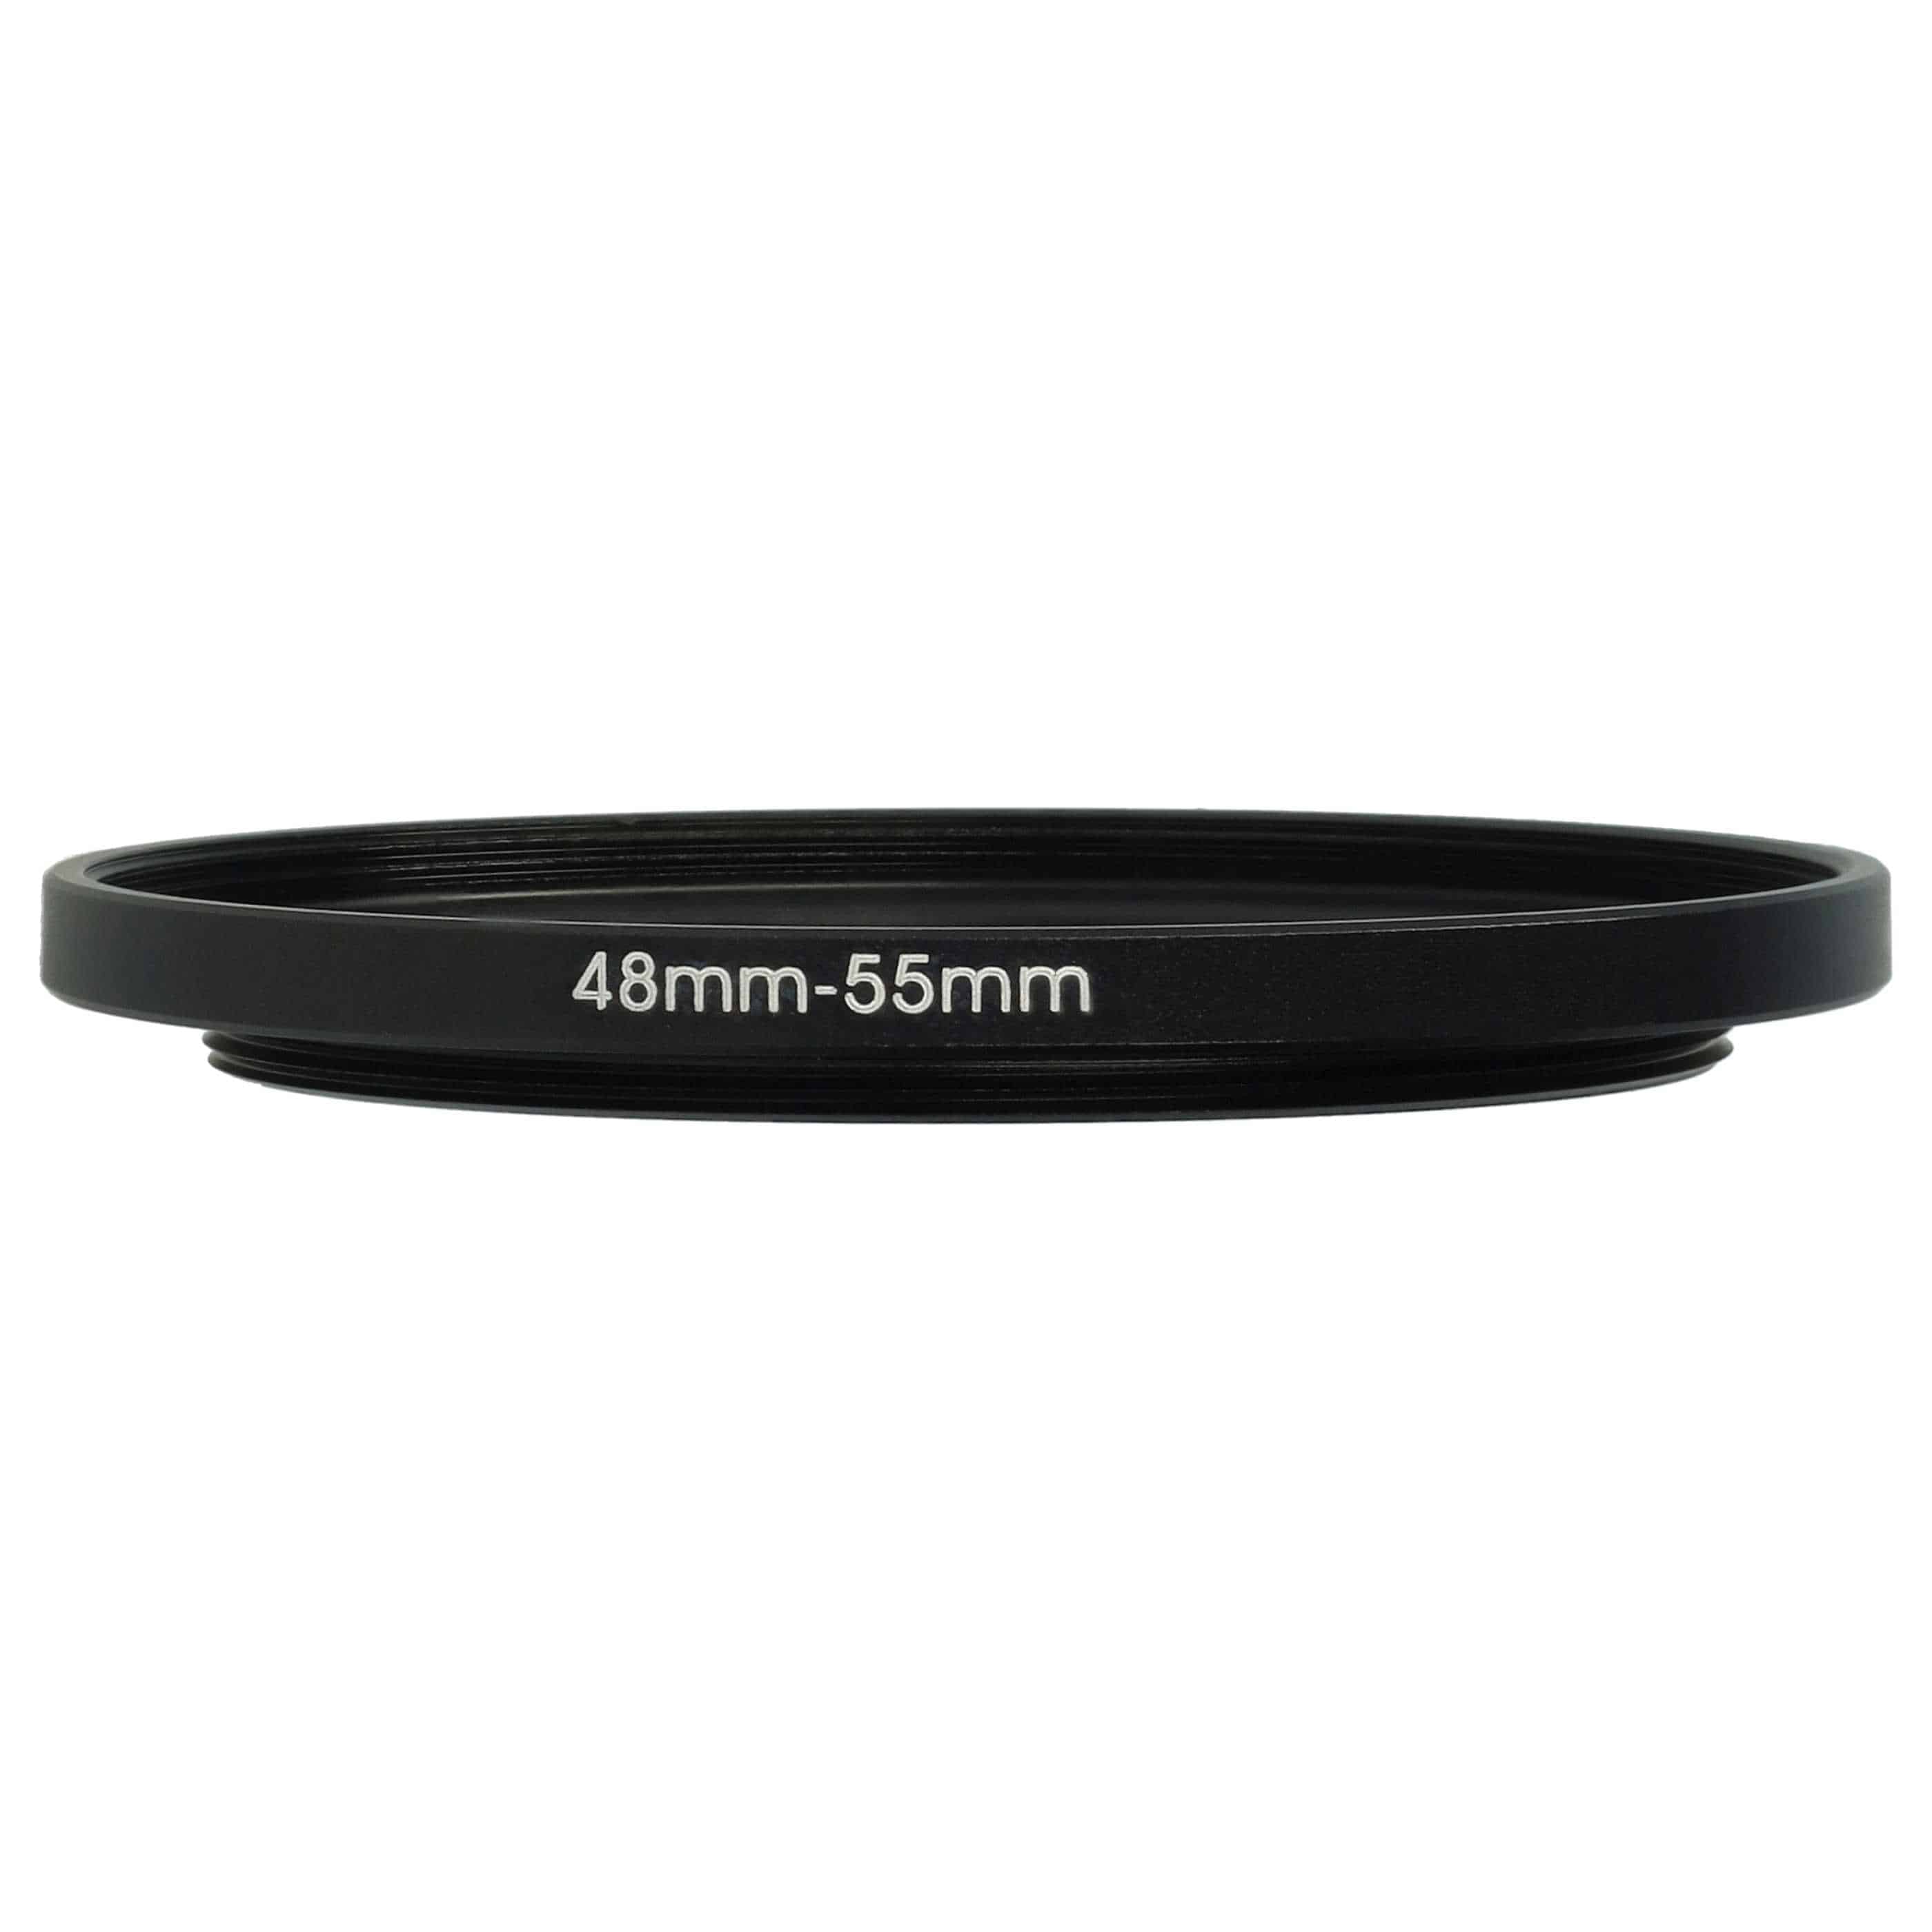 Redukcja filtrowa adapter 48 mm na 55 mm na różne obiektywy 